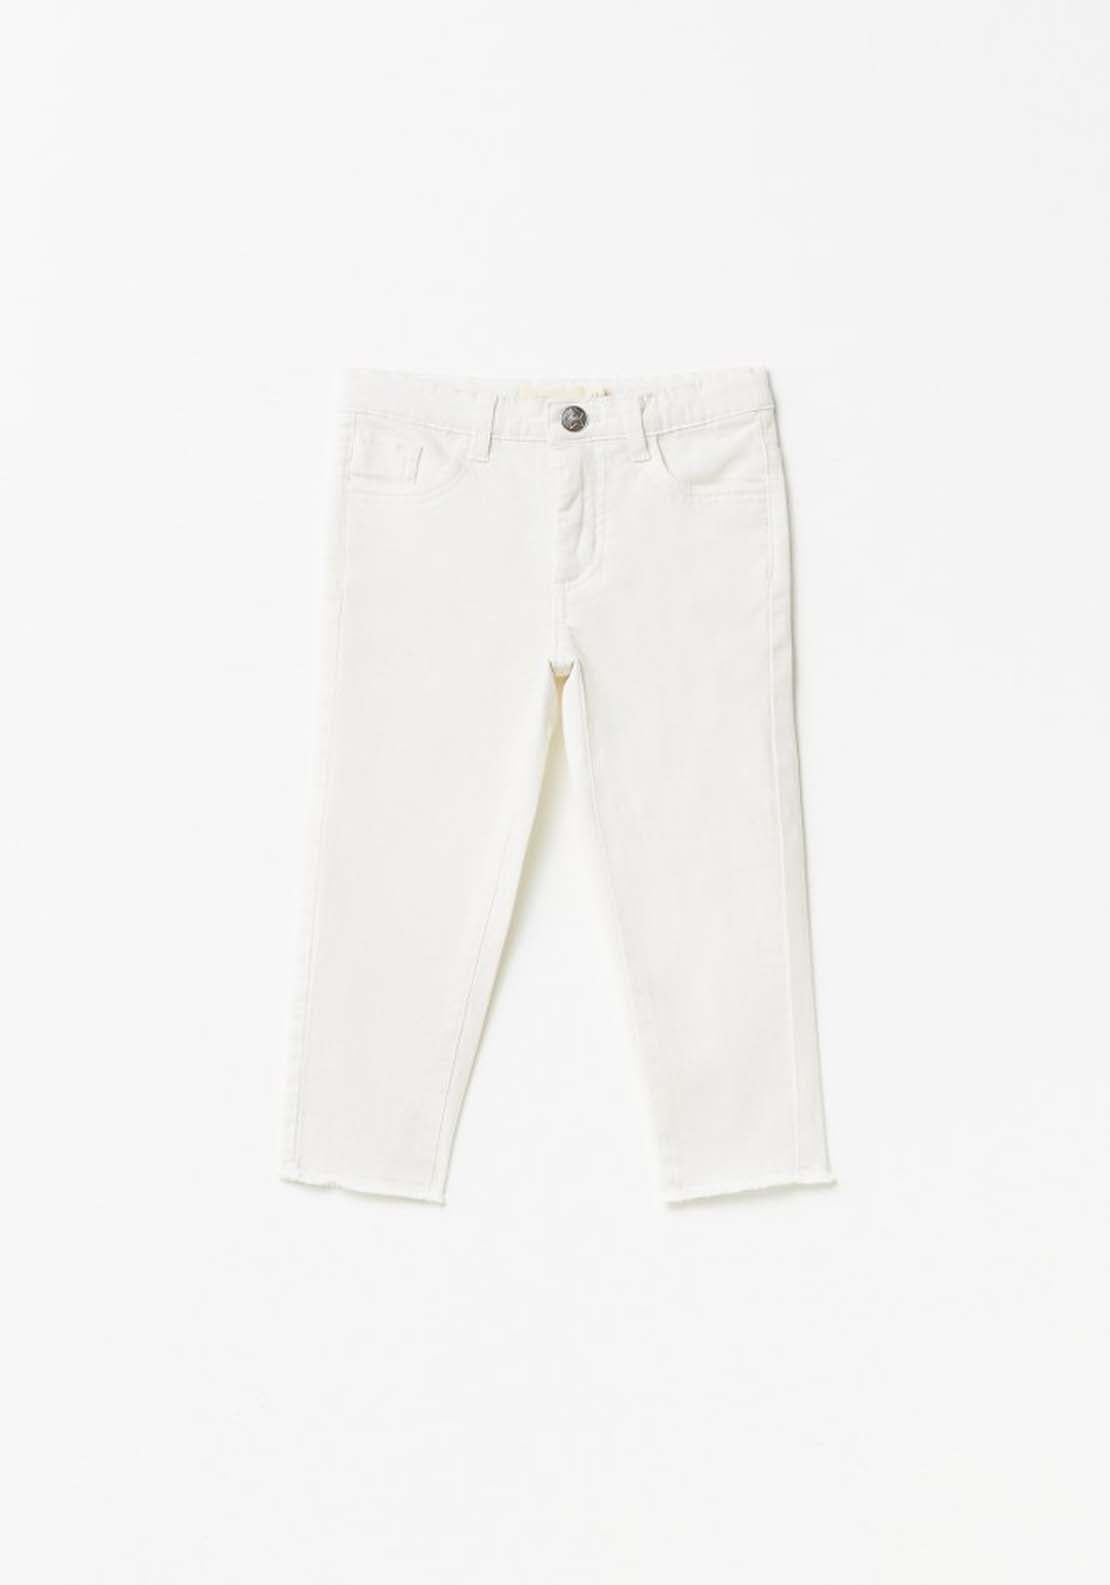 Sfera White Plain Twill Jeans - Cream 1 Shaws Department Stores